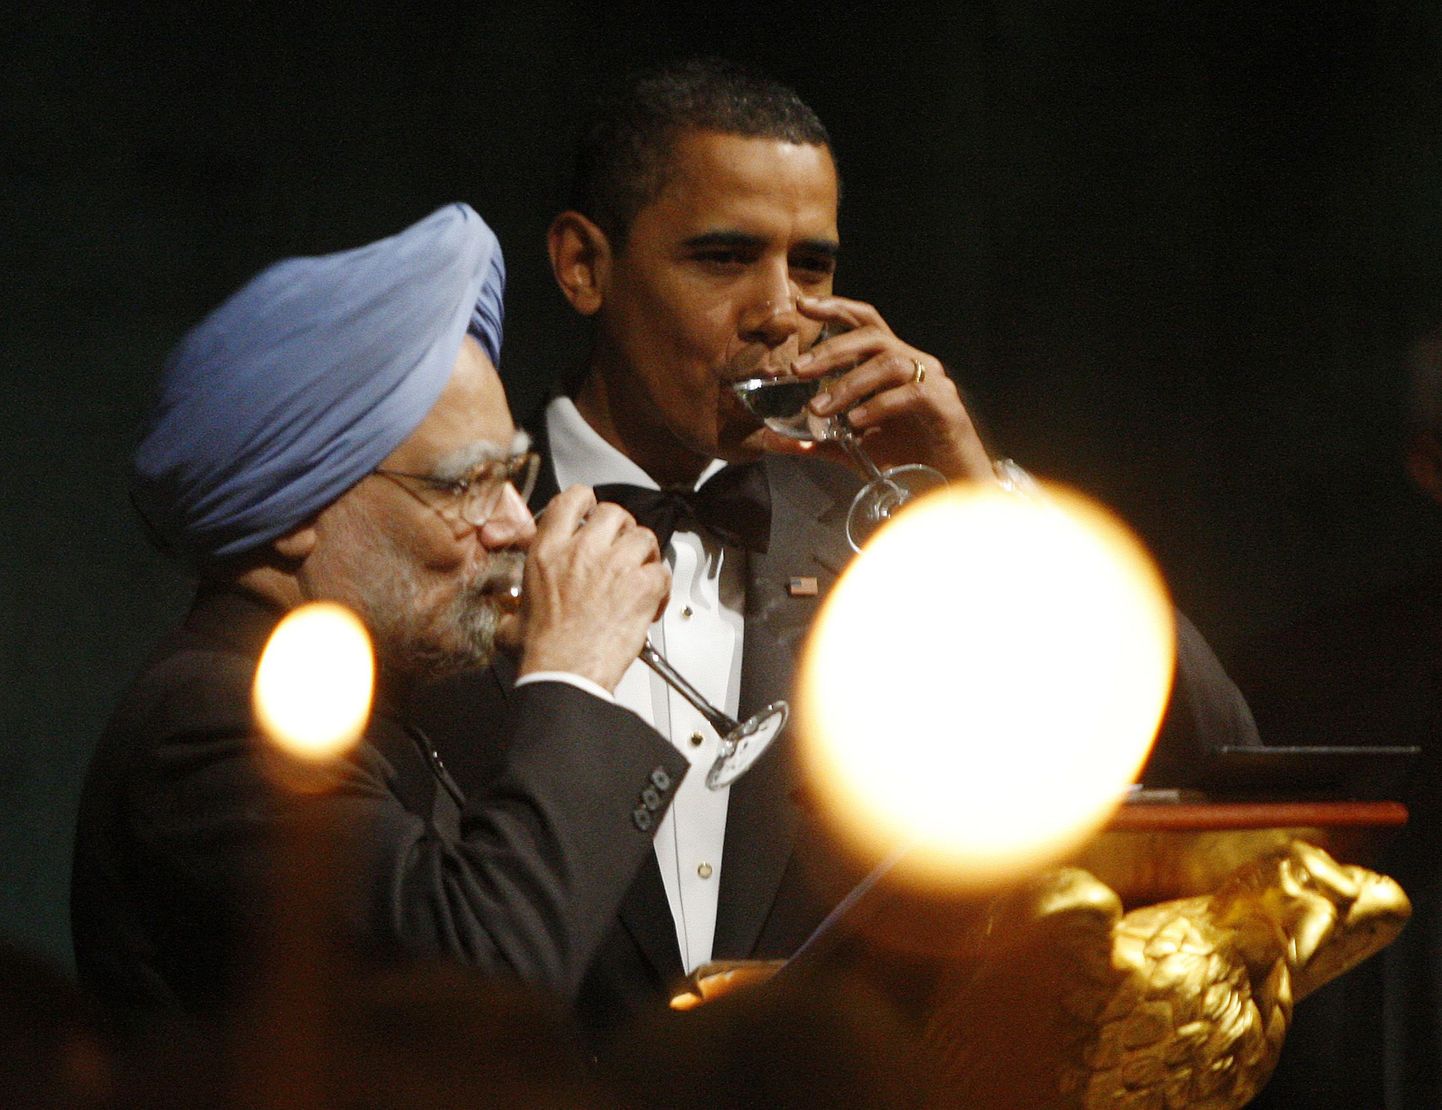 Обама и Сингх пьют в честь хороших отношений между США и Индией.